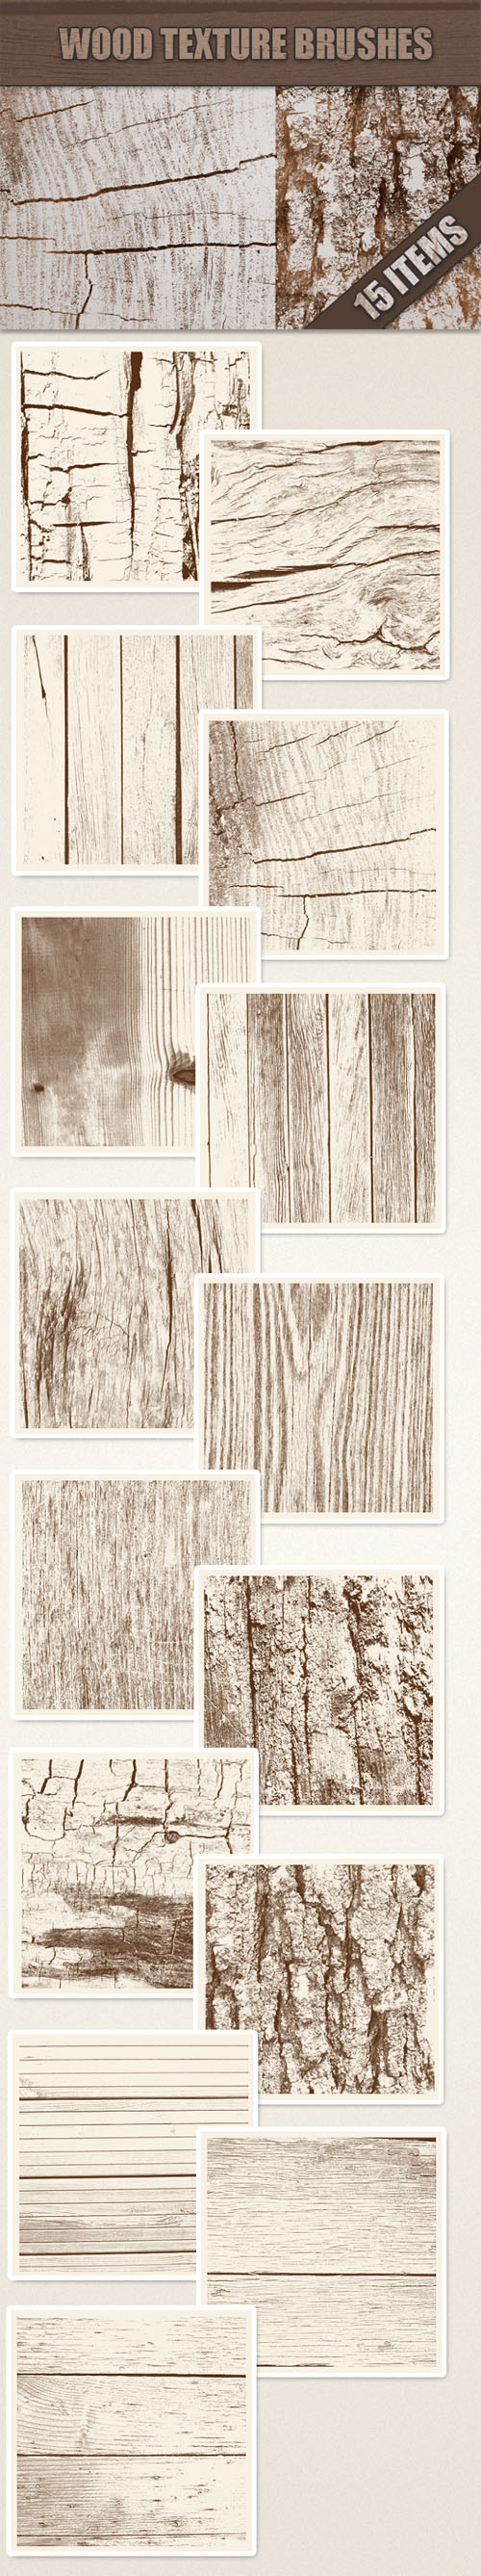 Designtnt - Wood Photoshop Brushes Set 1